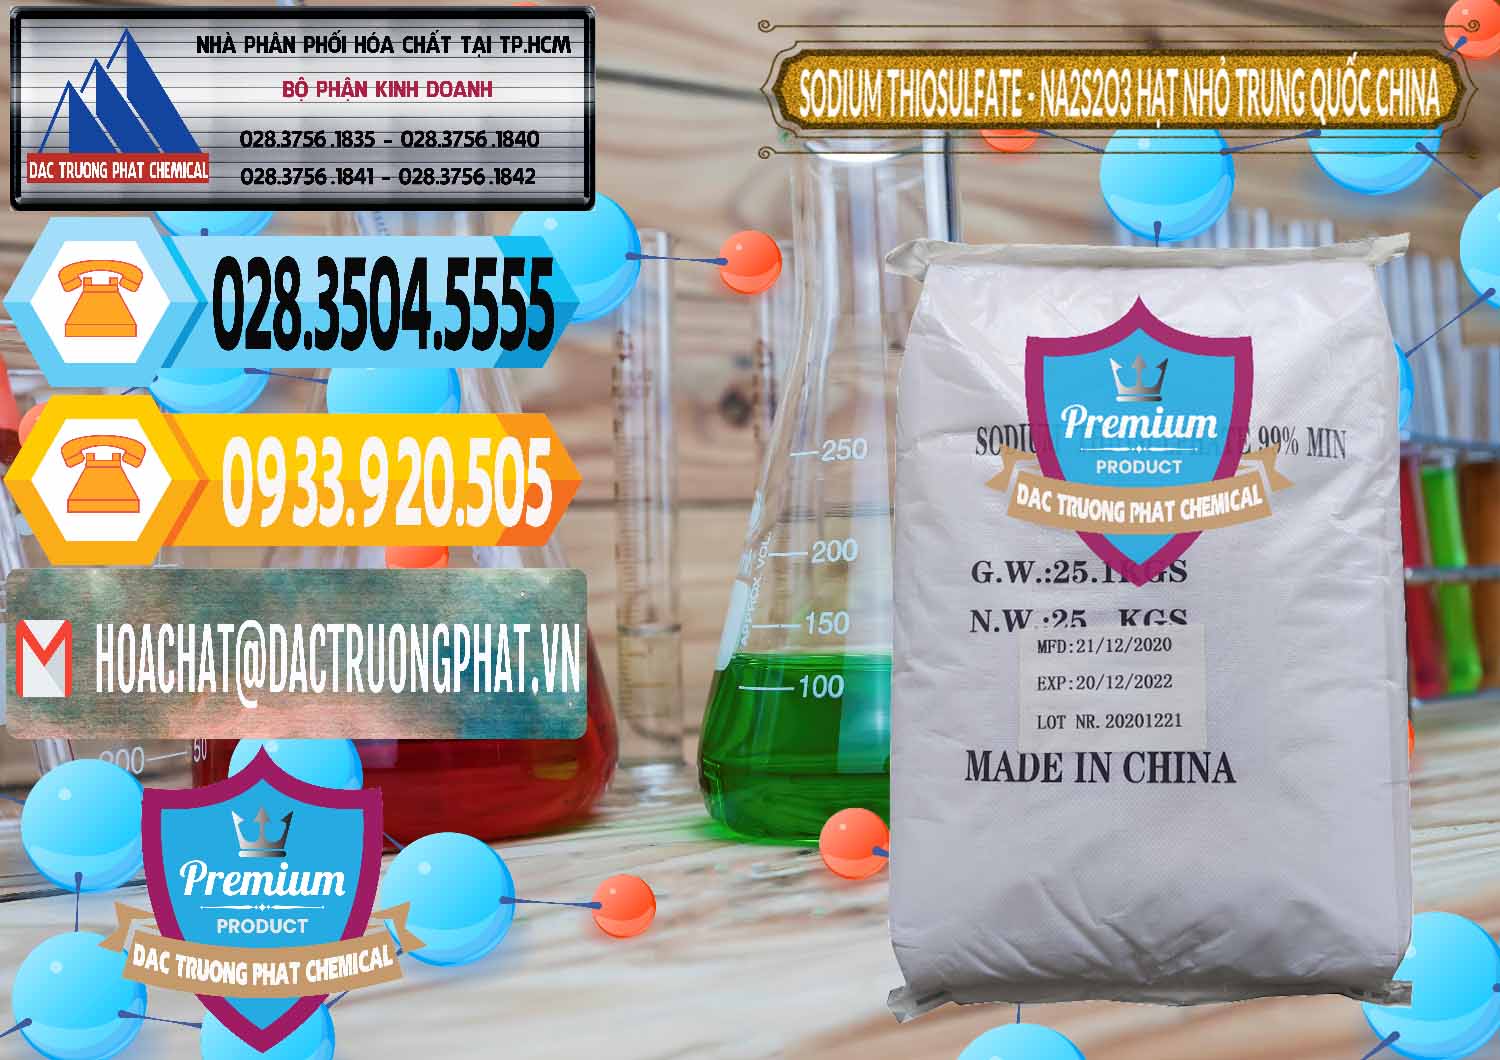 Nơi nhập khẩu - bán Sodium Thiosulfate - NA2S2O3 Hạt Nhỏ Trung Quốc China - 0204 - Nơi cung cấp - nhập khẩu hóa chất tại TP.HCM - hoachattayrua.net